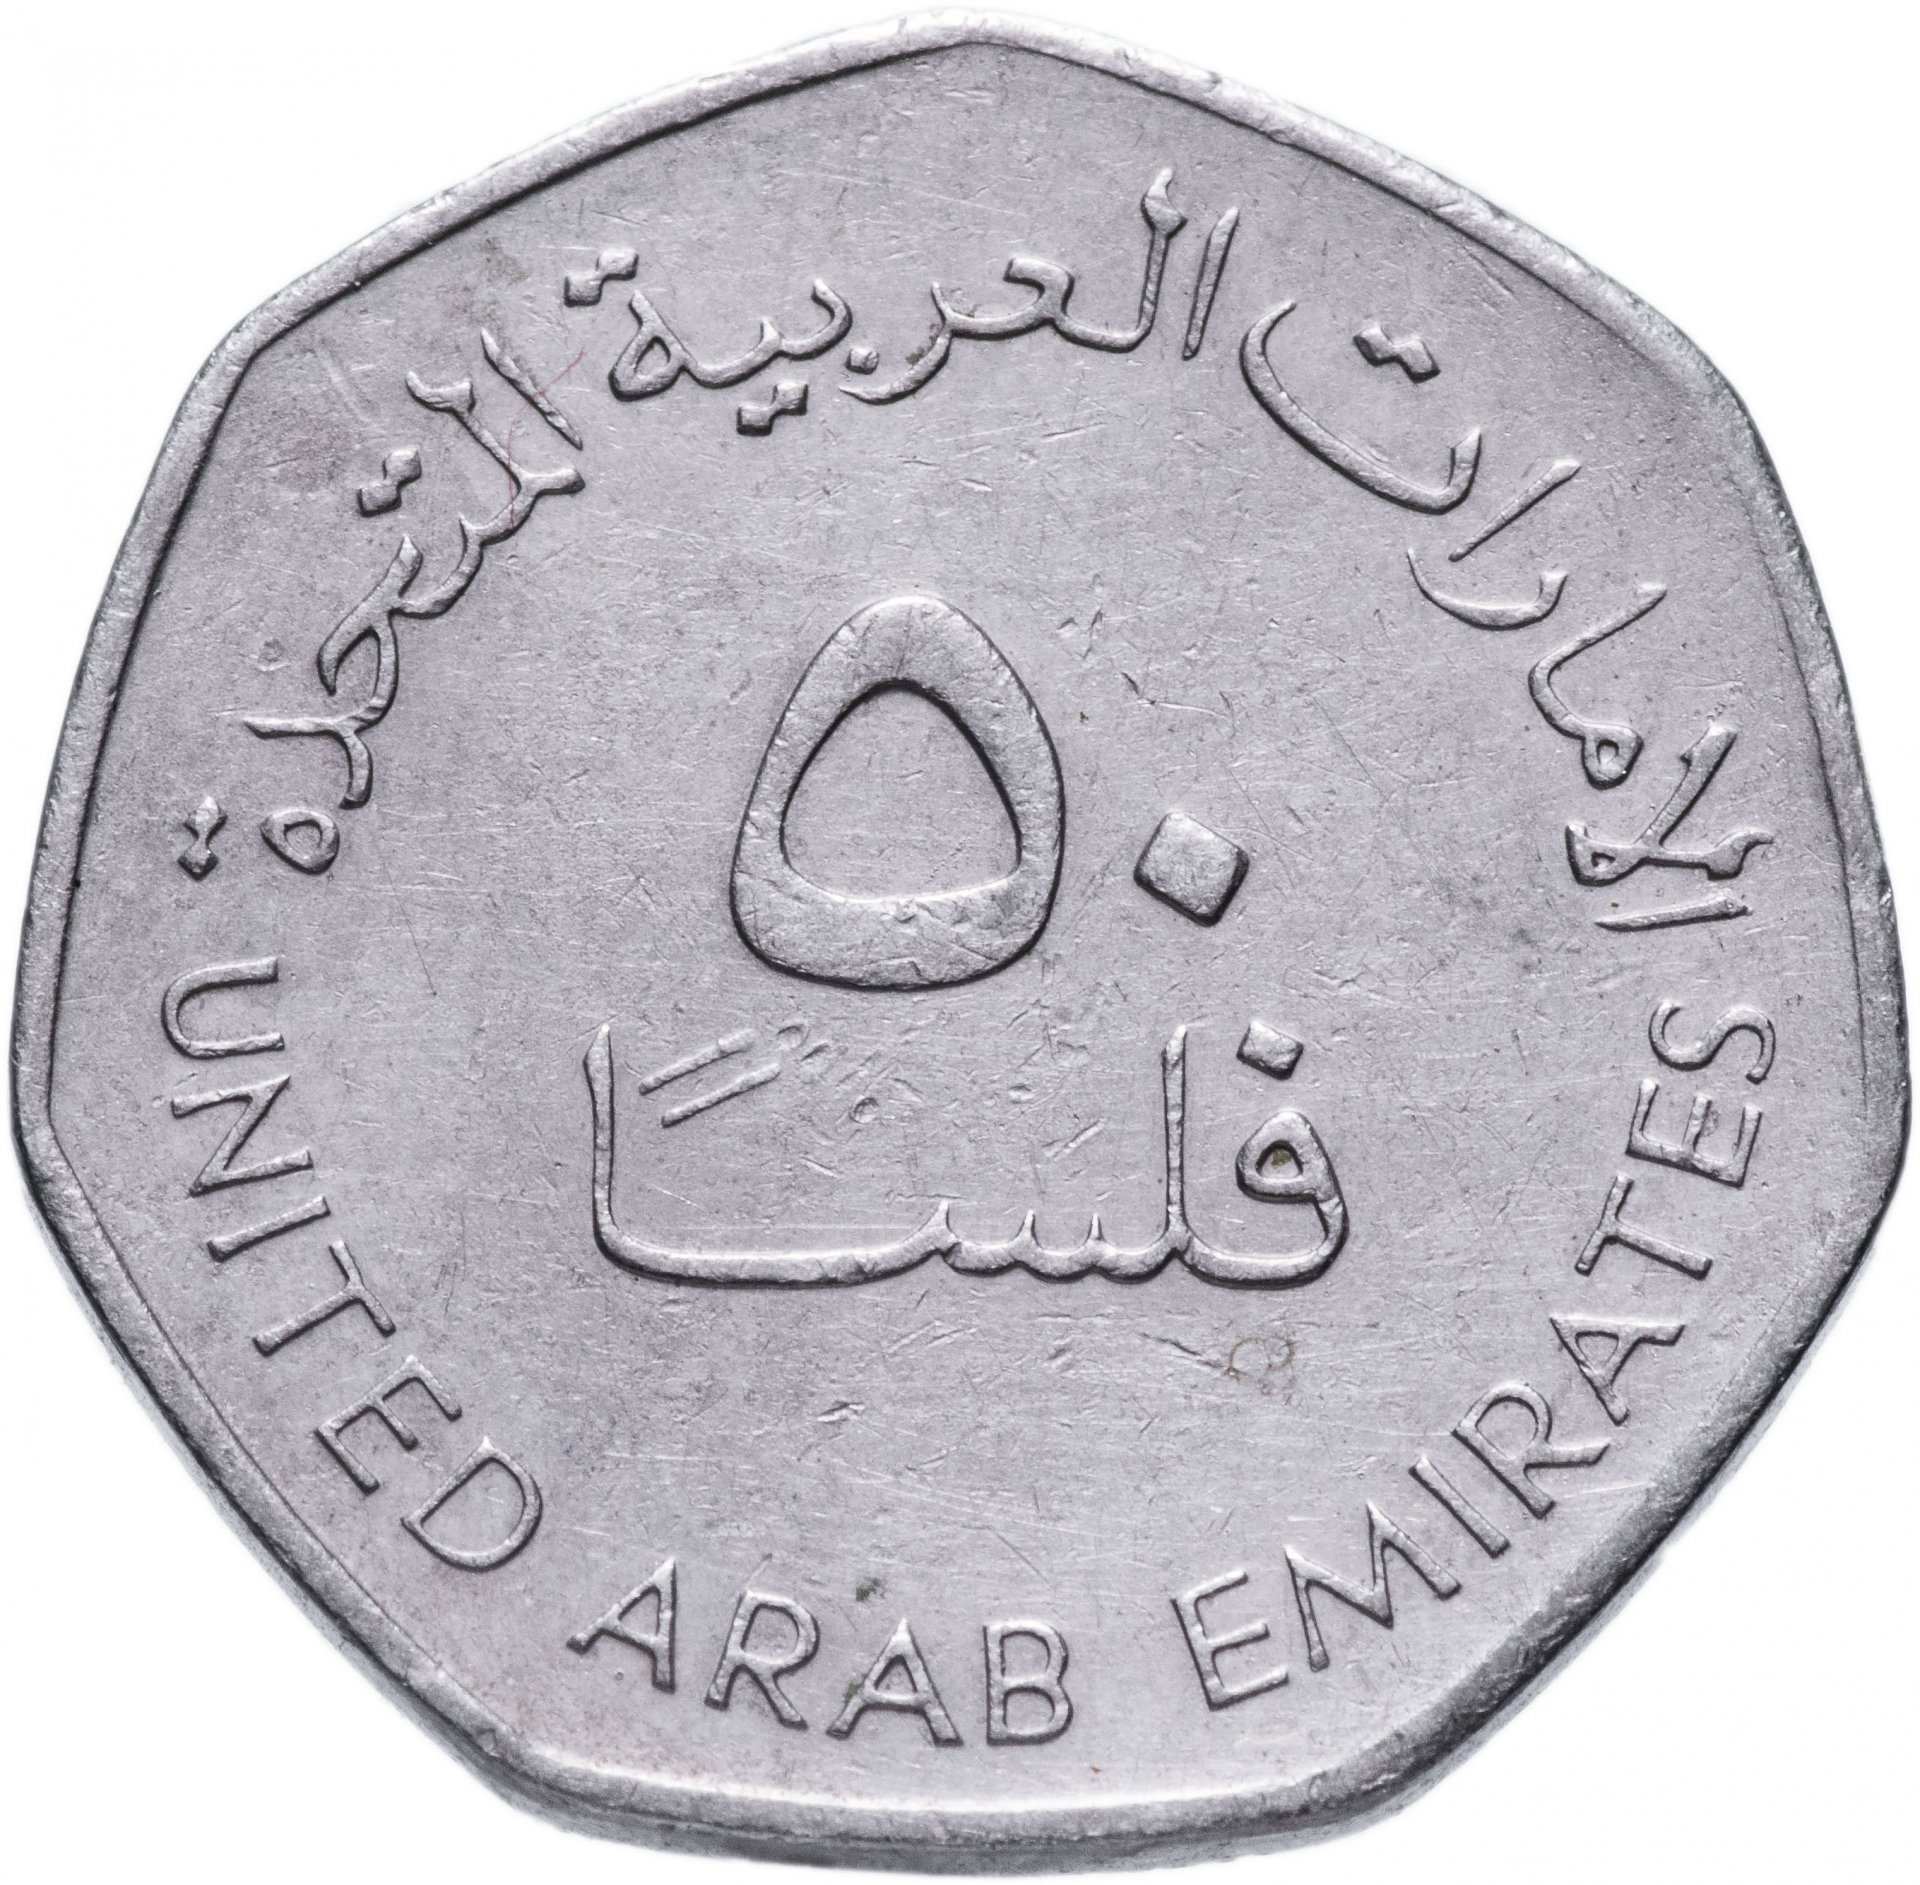 345 дирхам. 50 Филсов 1995-2007 ОАЭ. Арабские эмираты монета 50 филсов. Монеты 50 филсов арабский. 50 Филсов 2007 ОАЭ.